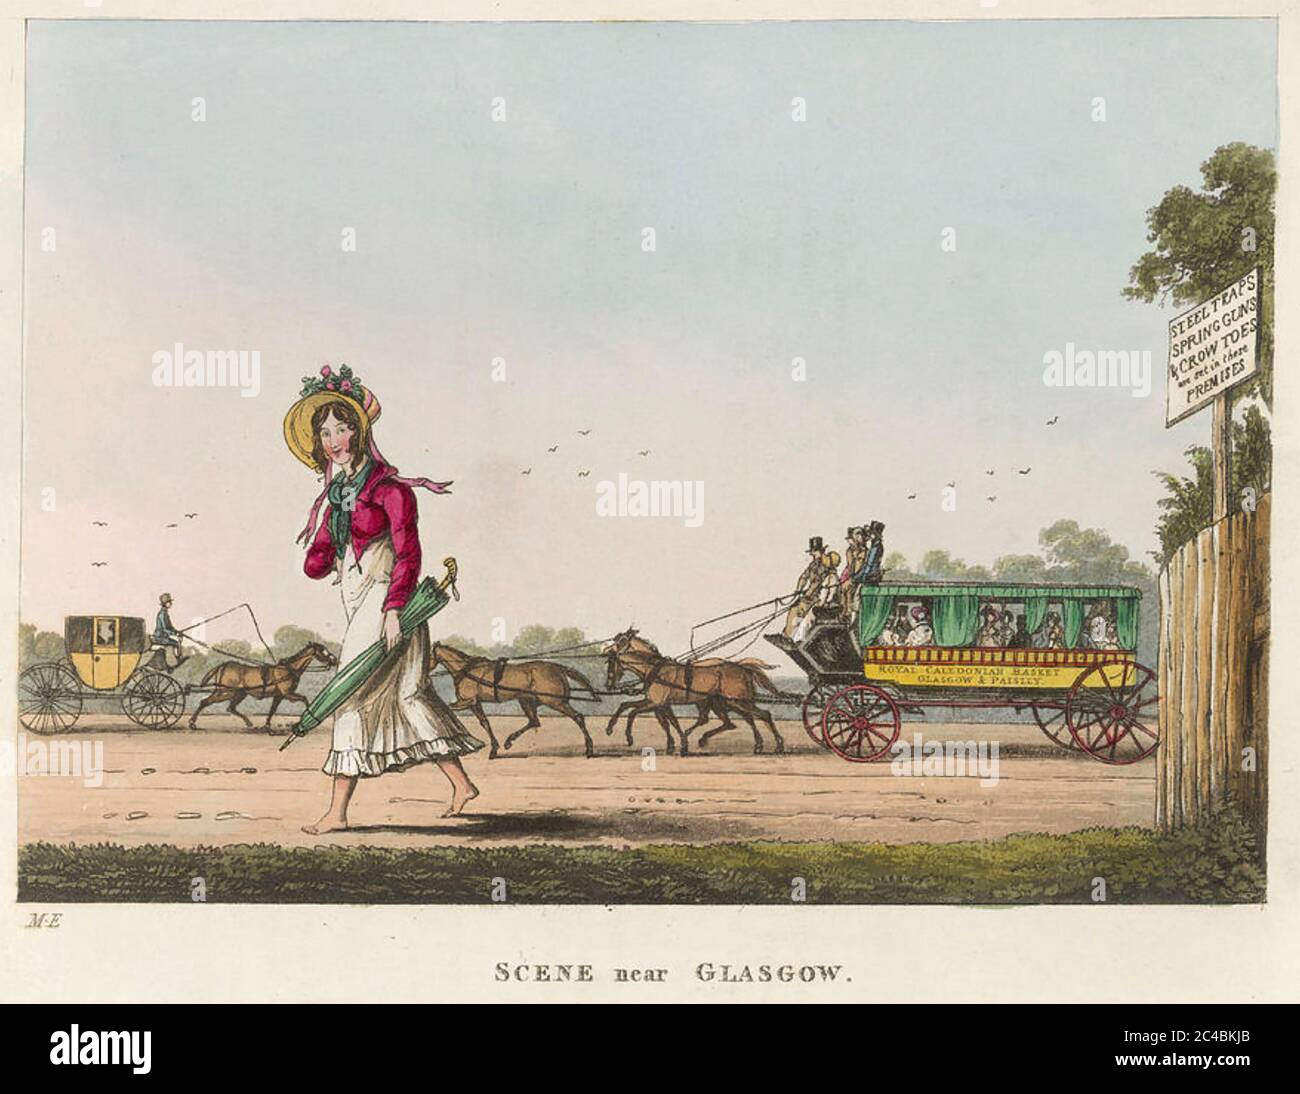 ROYAL CALEDONIAN KUBENTAUCHKUTSCHE zwischen Glasgow und Paisley in einem Stich von 1825. Die Anzeige auf dem Zaun rechts ist eine Warnung vor Eindringlinge. Seltsamerweise ist die Dame Barfuß. Stockfoto